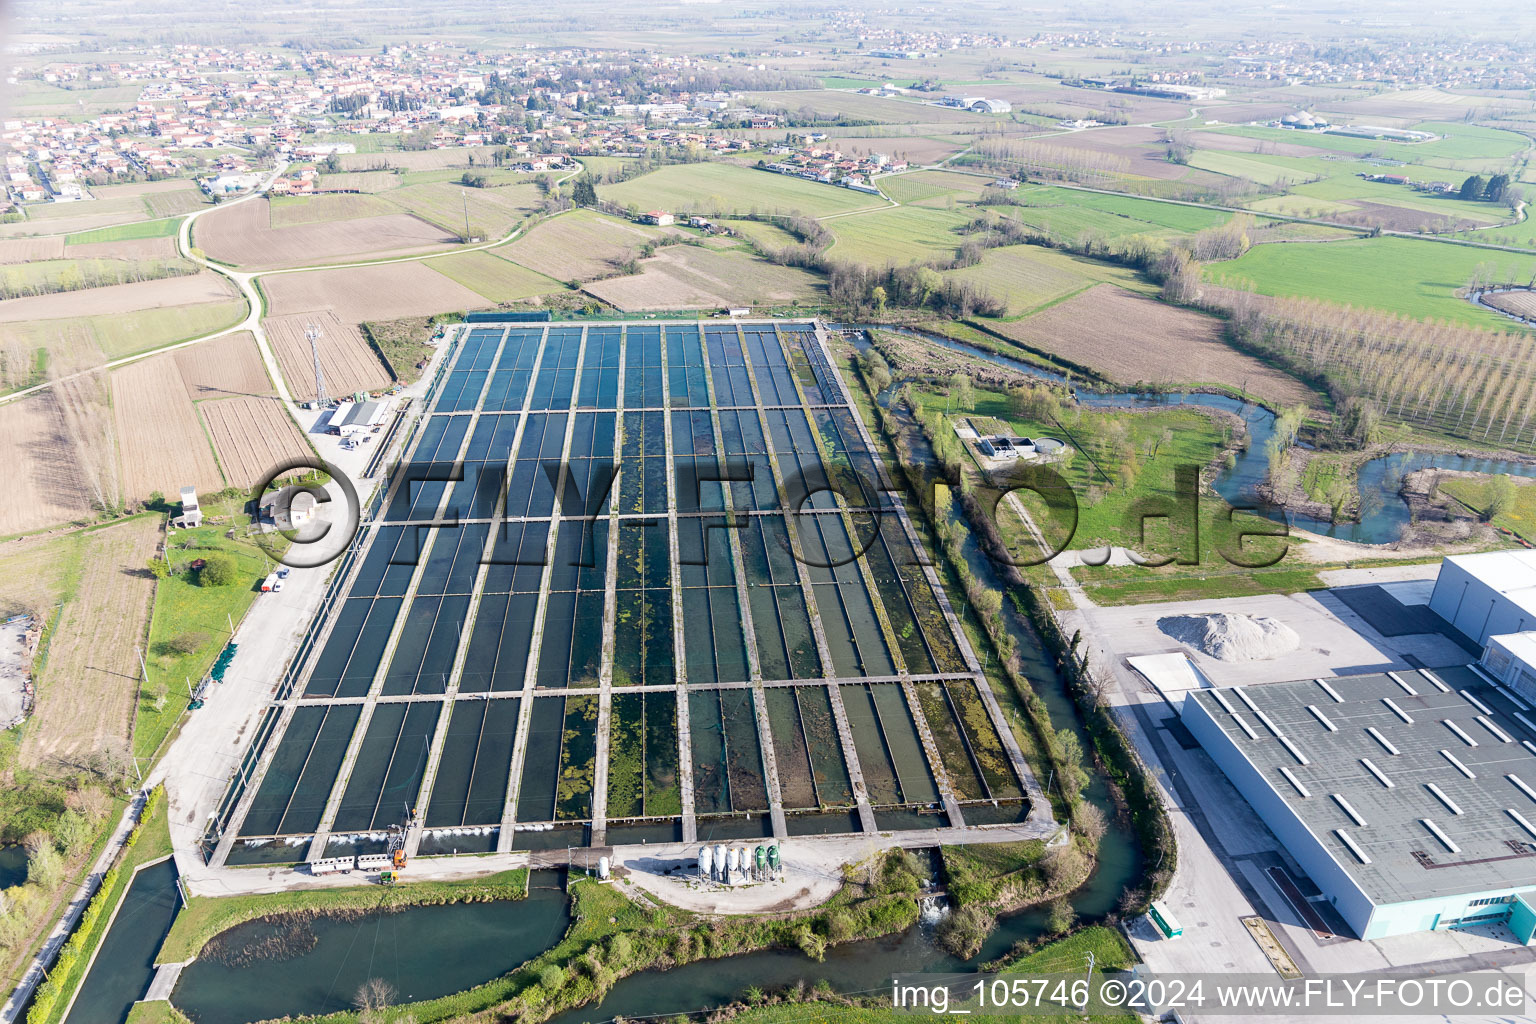 Uferbereiche der Teichanlagen zur Fischzucht von Icos professional in Zoppola in Friuli-Venezia Giulia im Bundesland Friaul-Julisch Venetien, Italien